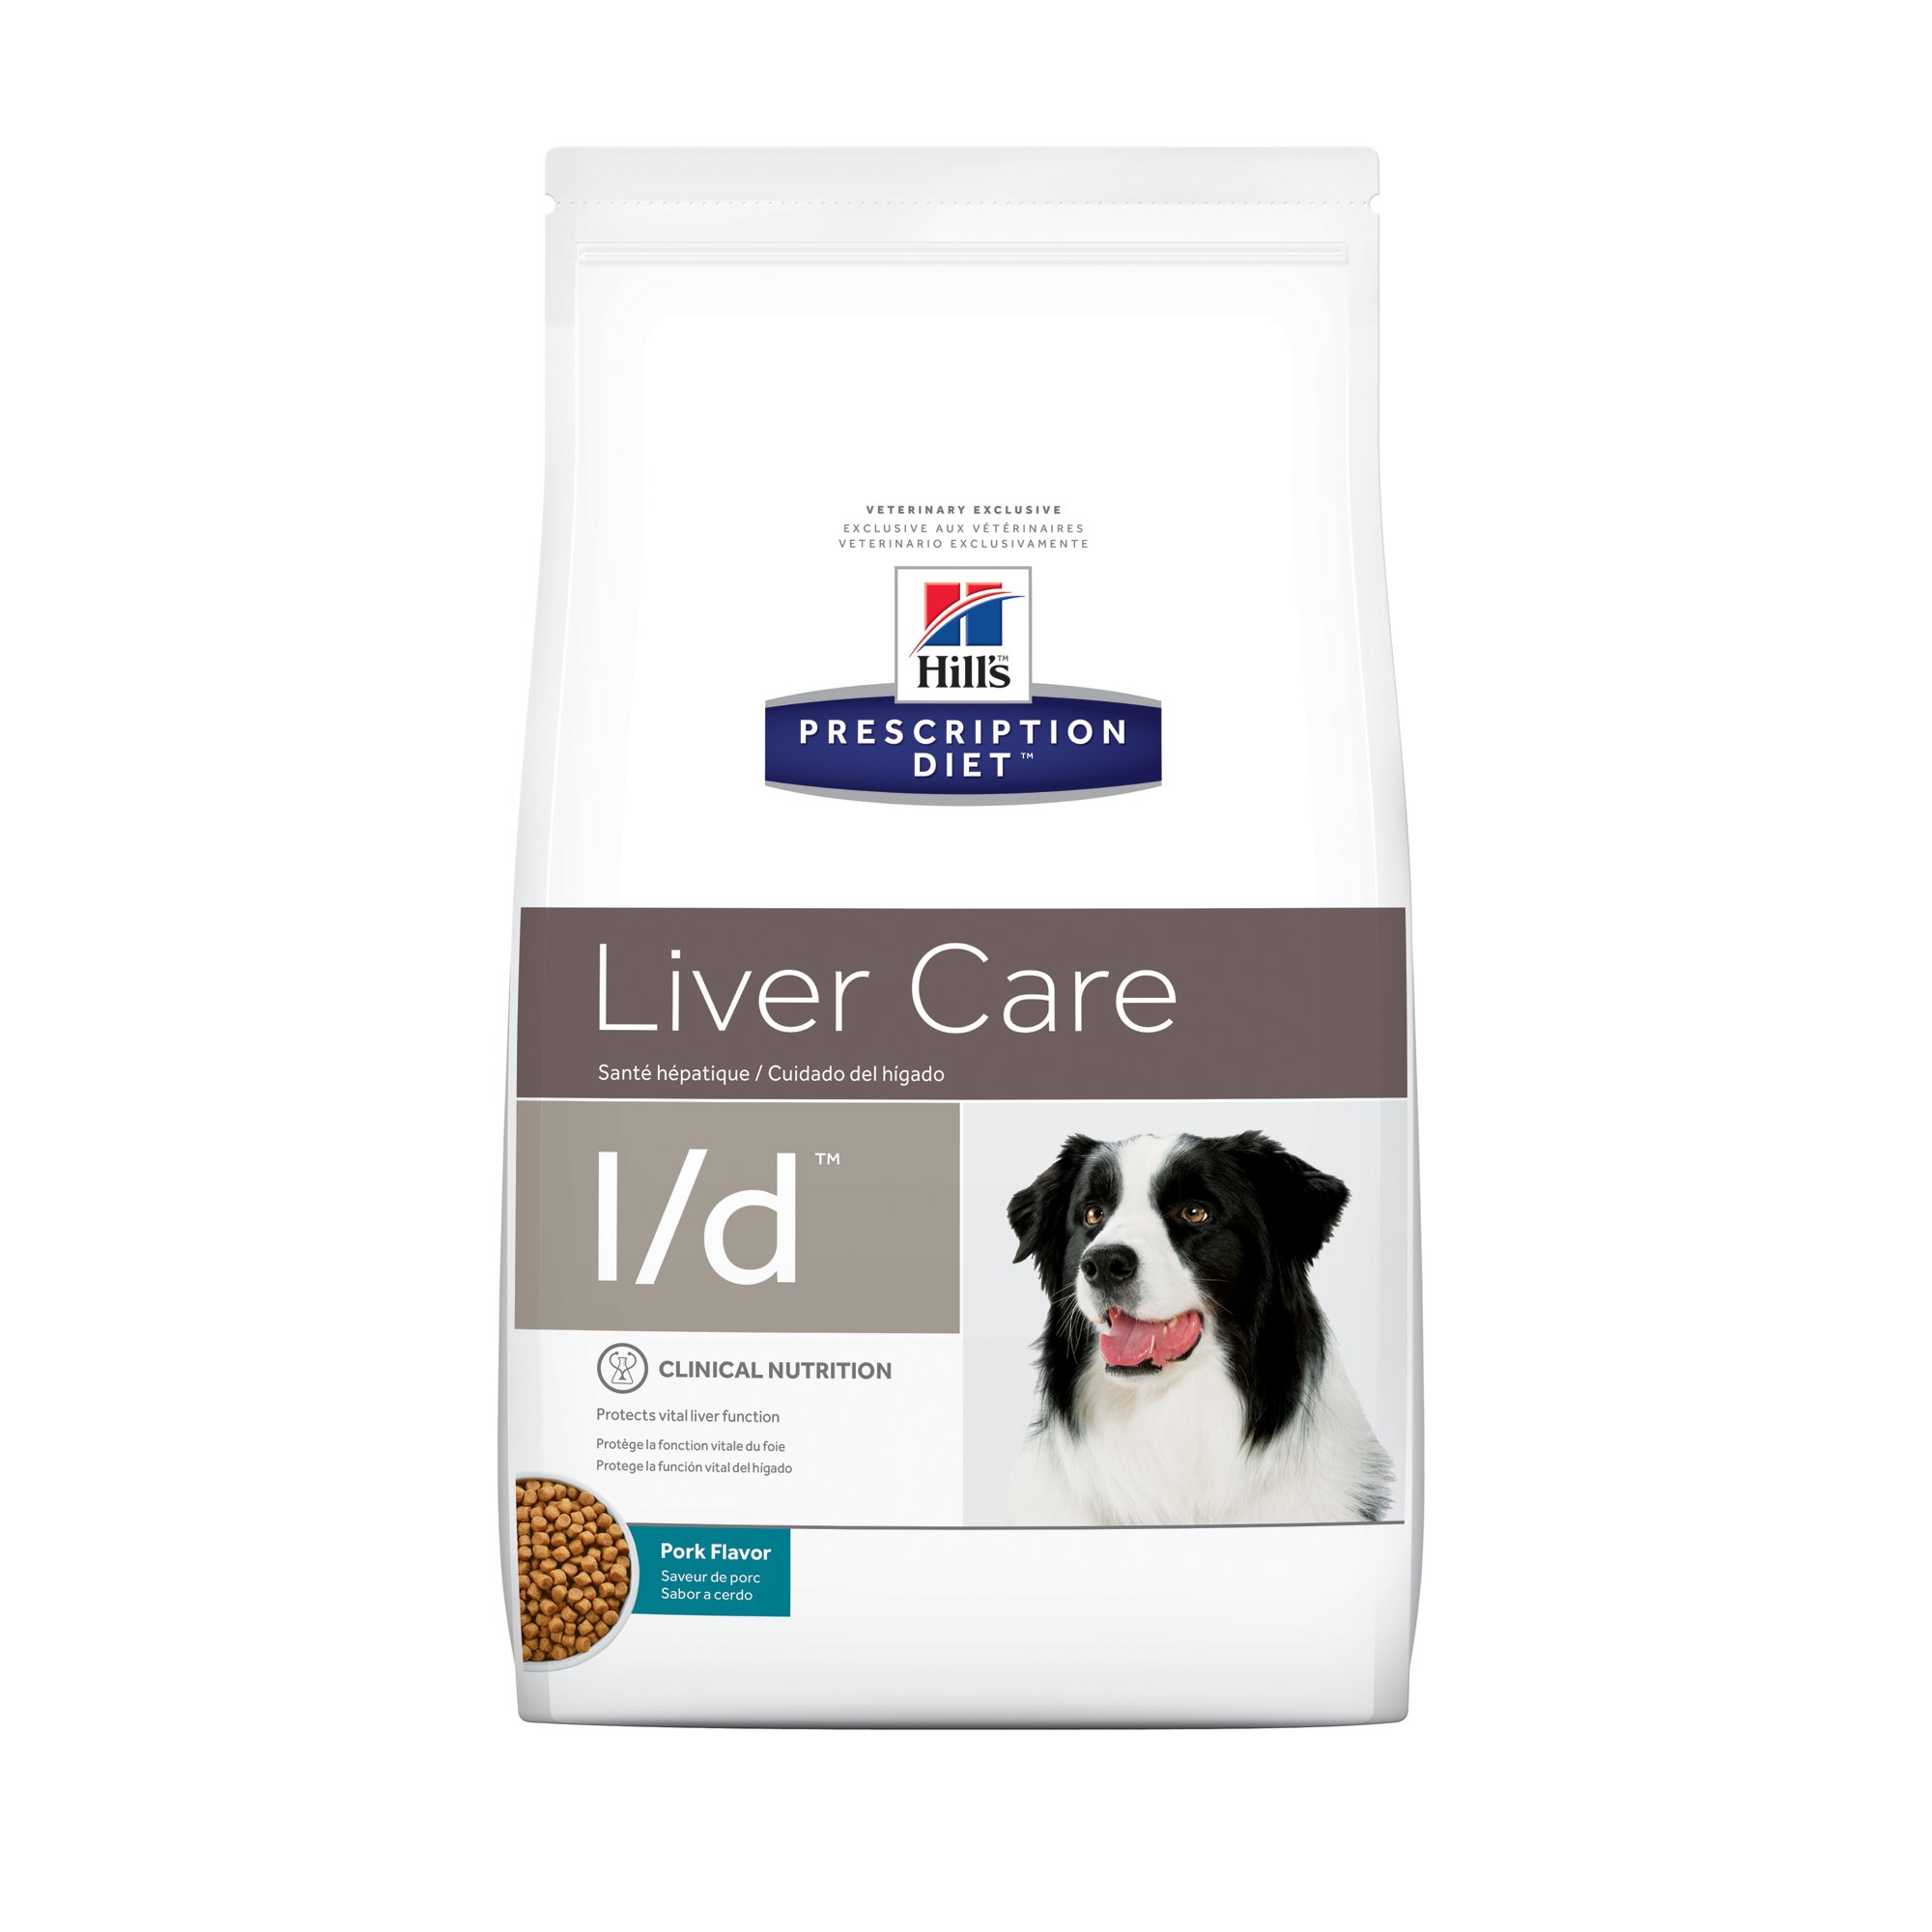 Liver dog food